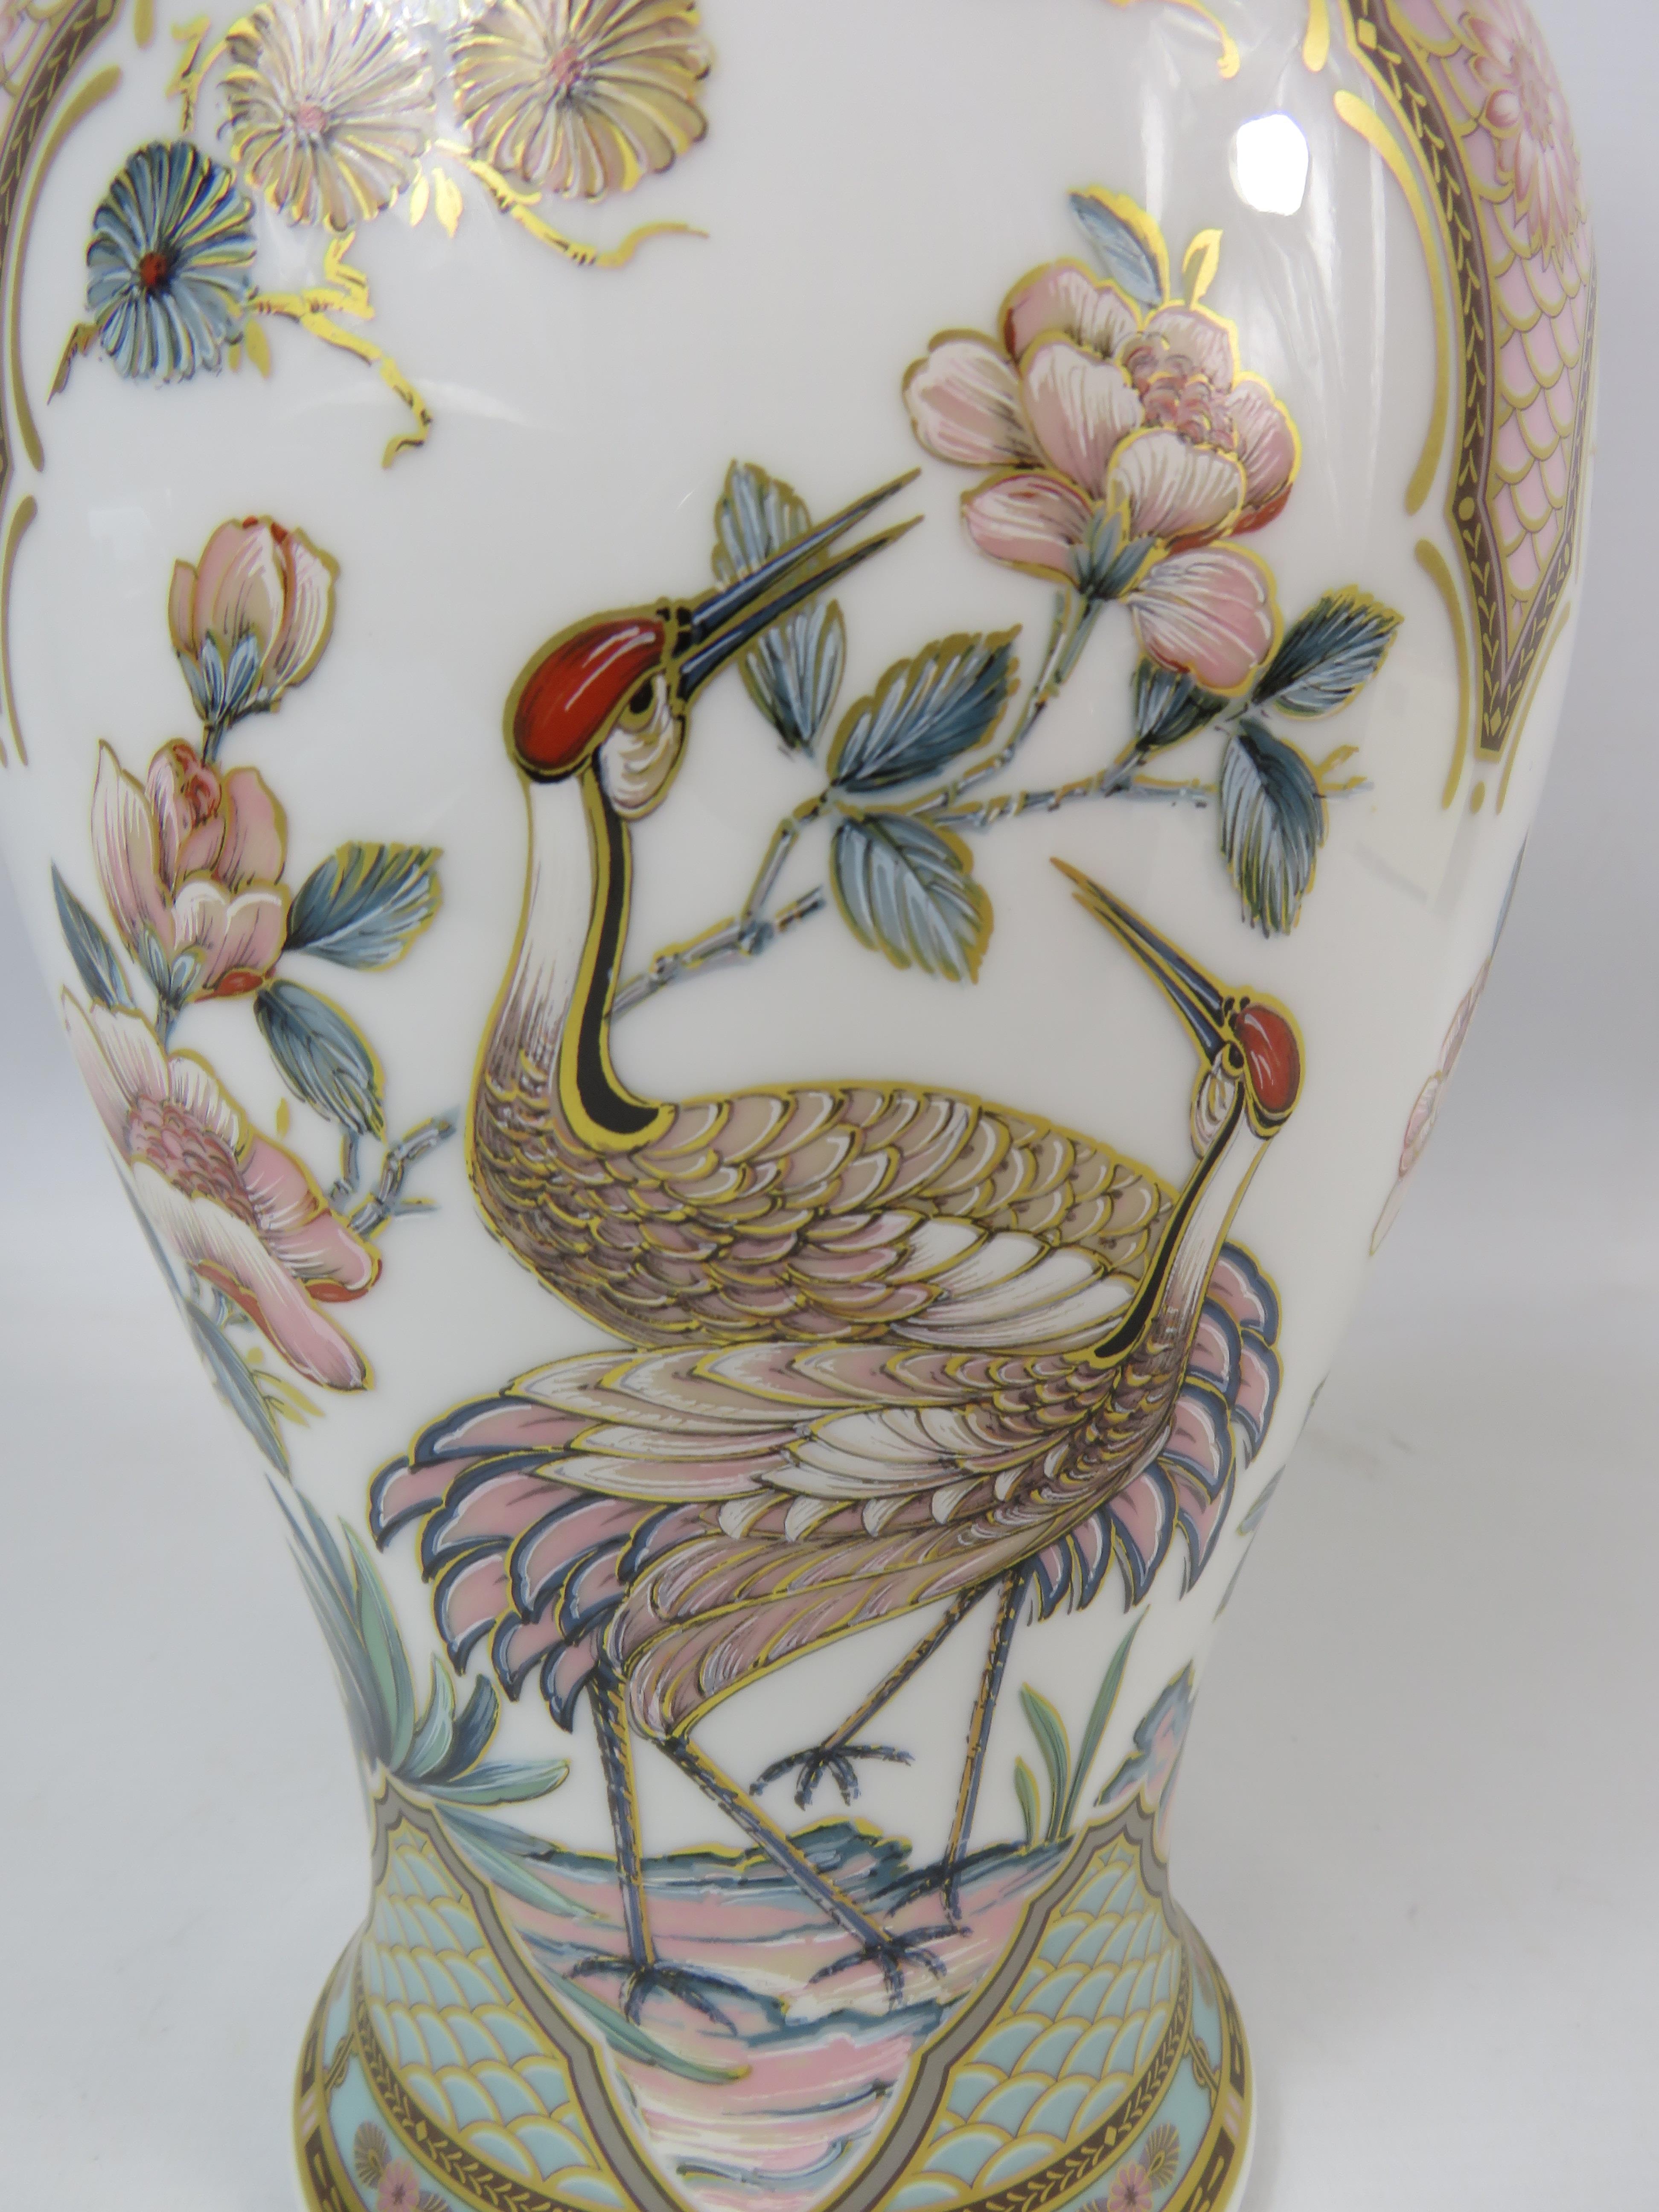 Kaiser German Porcelain vase "Impression" 34.5cm tall. - Image 3 of 5